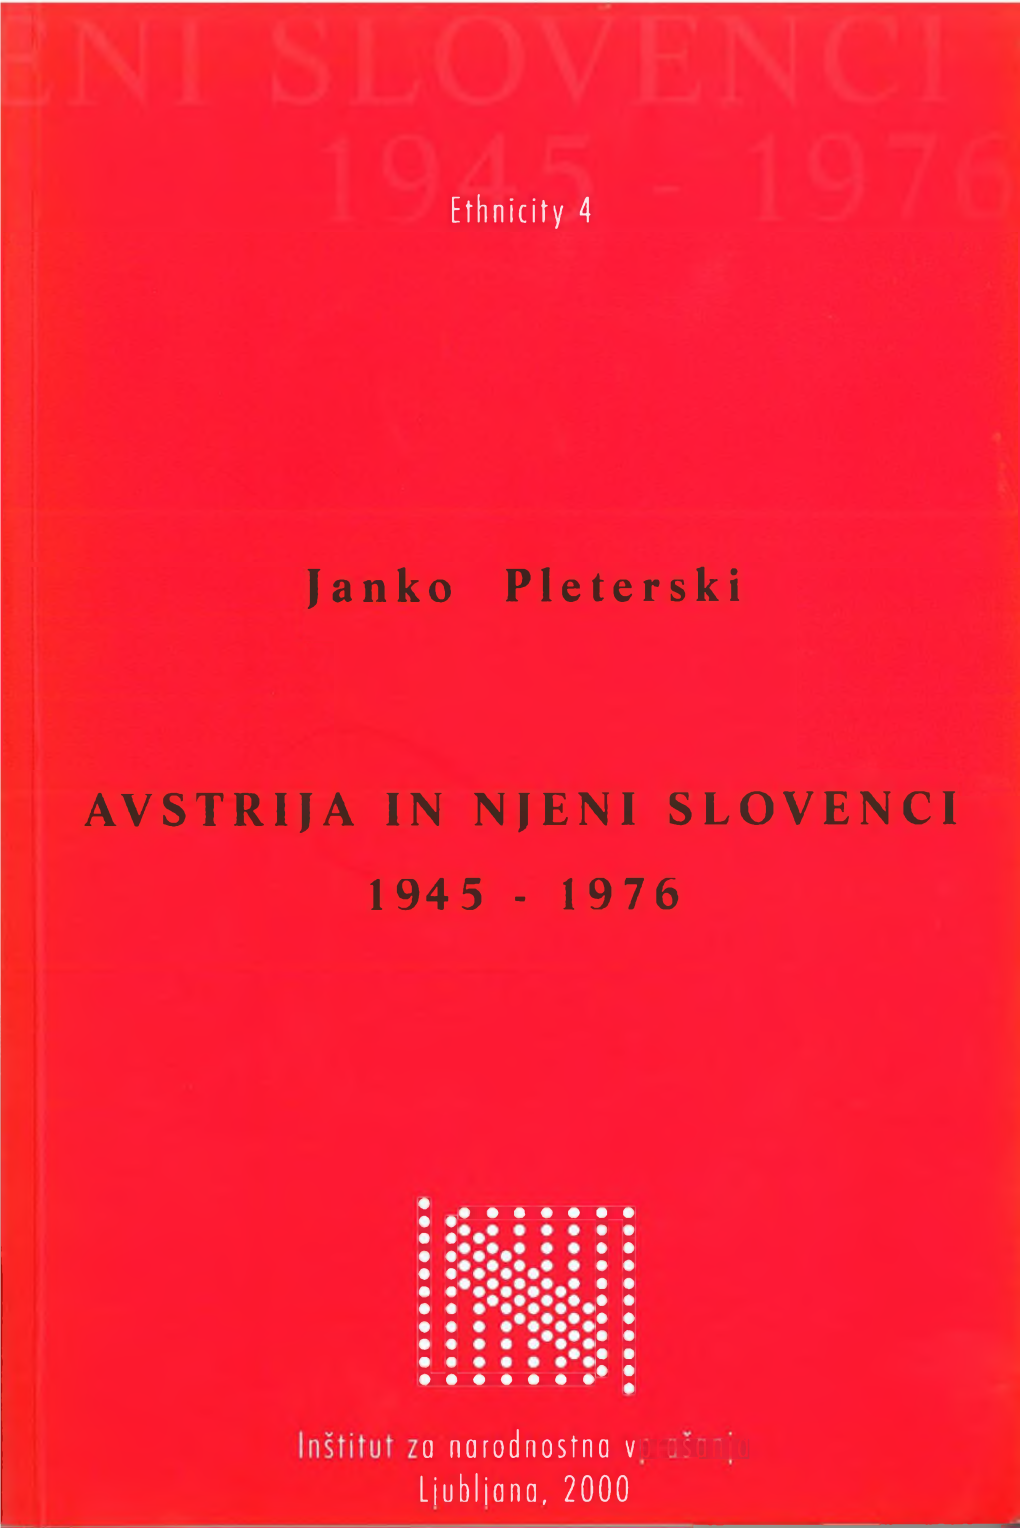 AVSTRIJA in NJENI SLOVENCI 1945 - 1976 Ethnicity 4